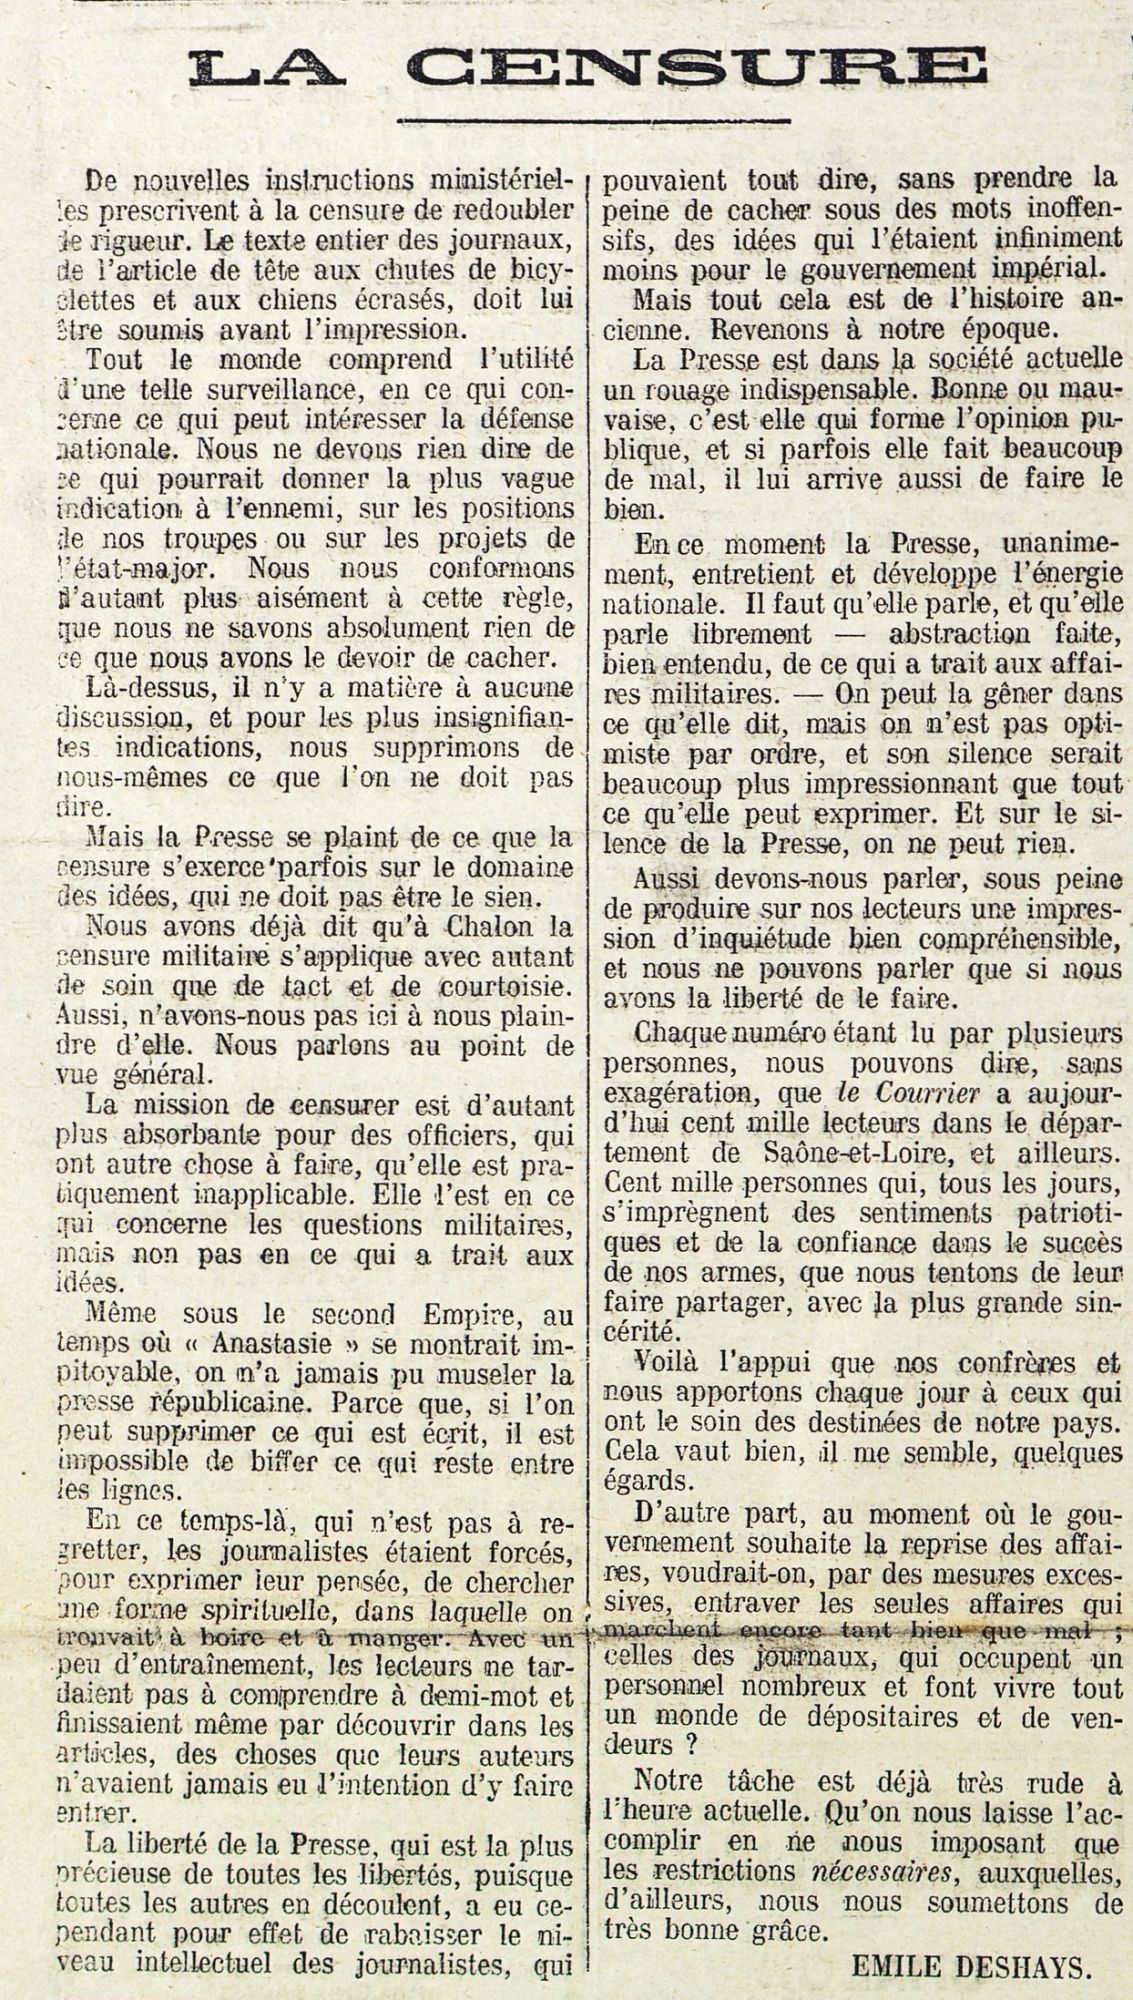 Edito sur la censure paru dans le journal Le Courrier de Saône-et-Loire du 29 septembre 1914 (PR13/110)